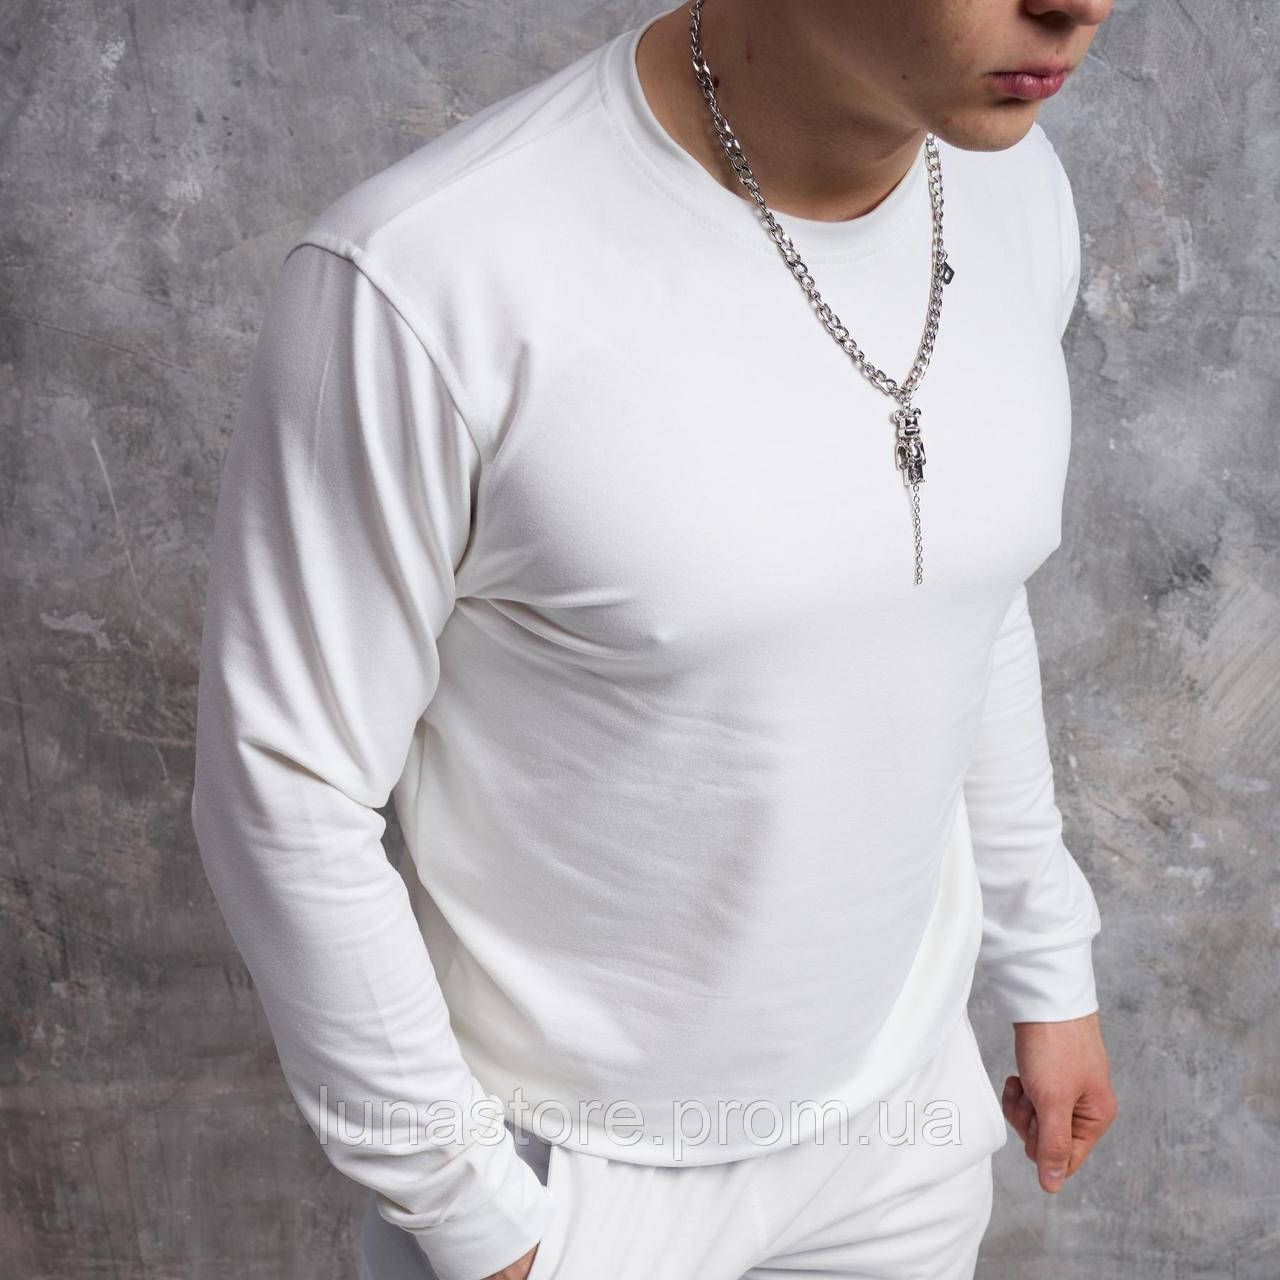 Демісезонний білий світшот LUN-TAC однотонний якісний стильний літній реглан без капюшона для носіння